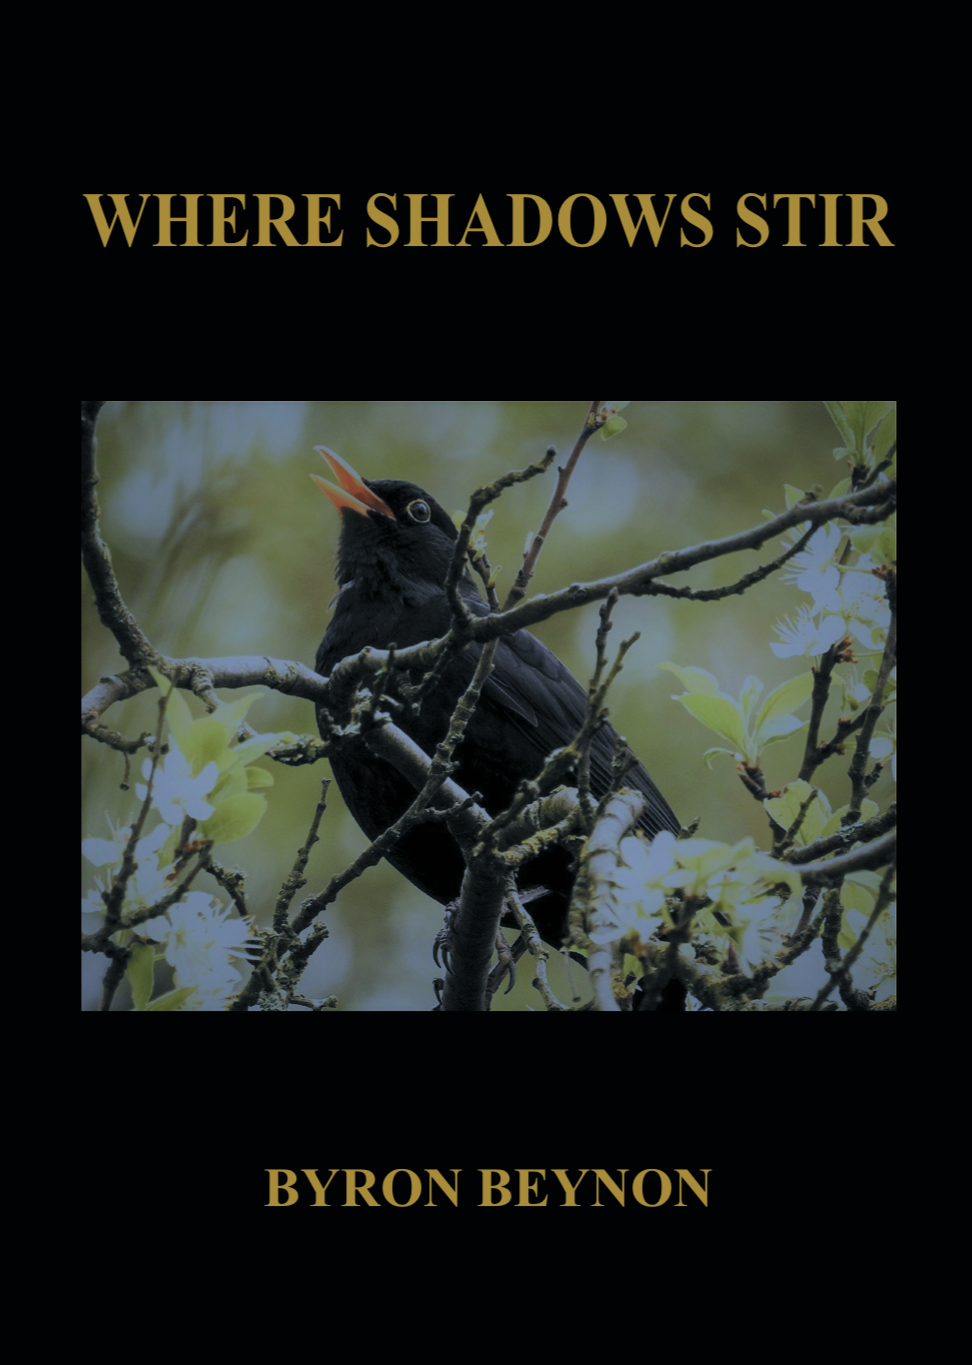 Where Shadows Stir by Welsh poet Byron Beynon